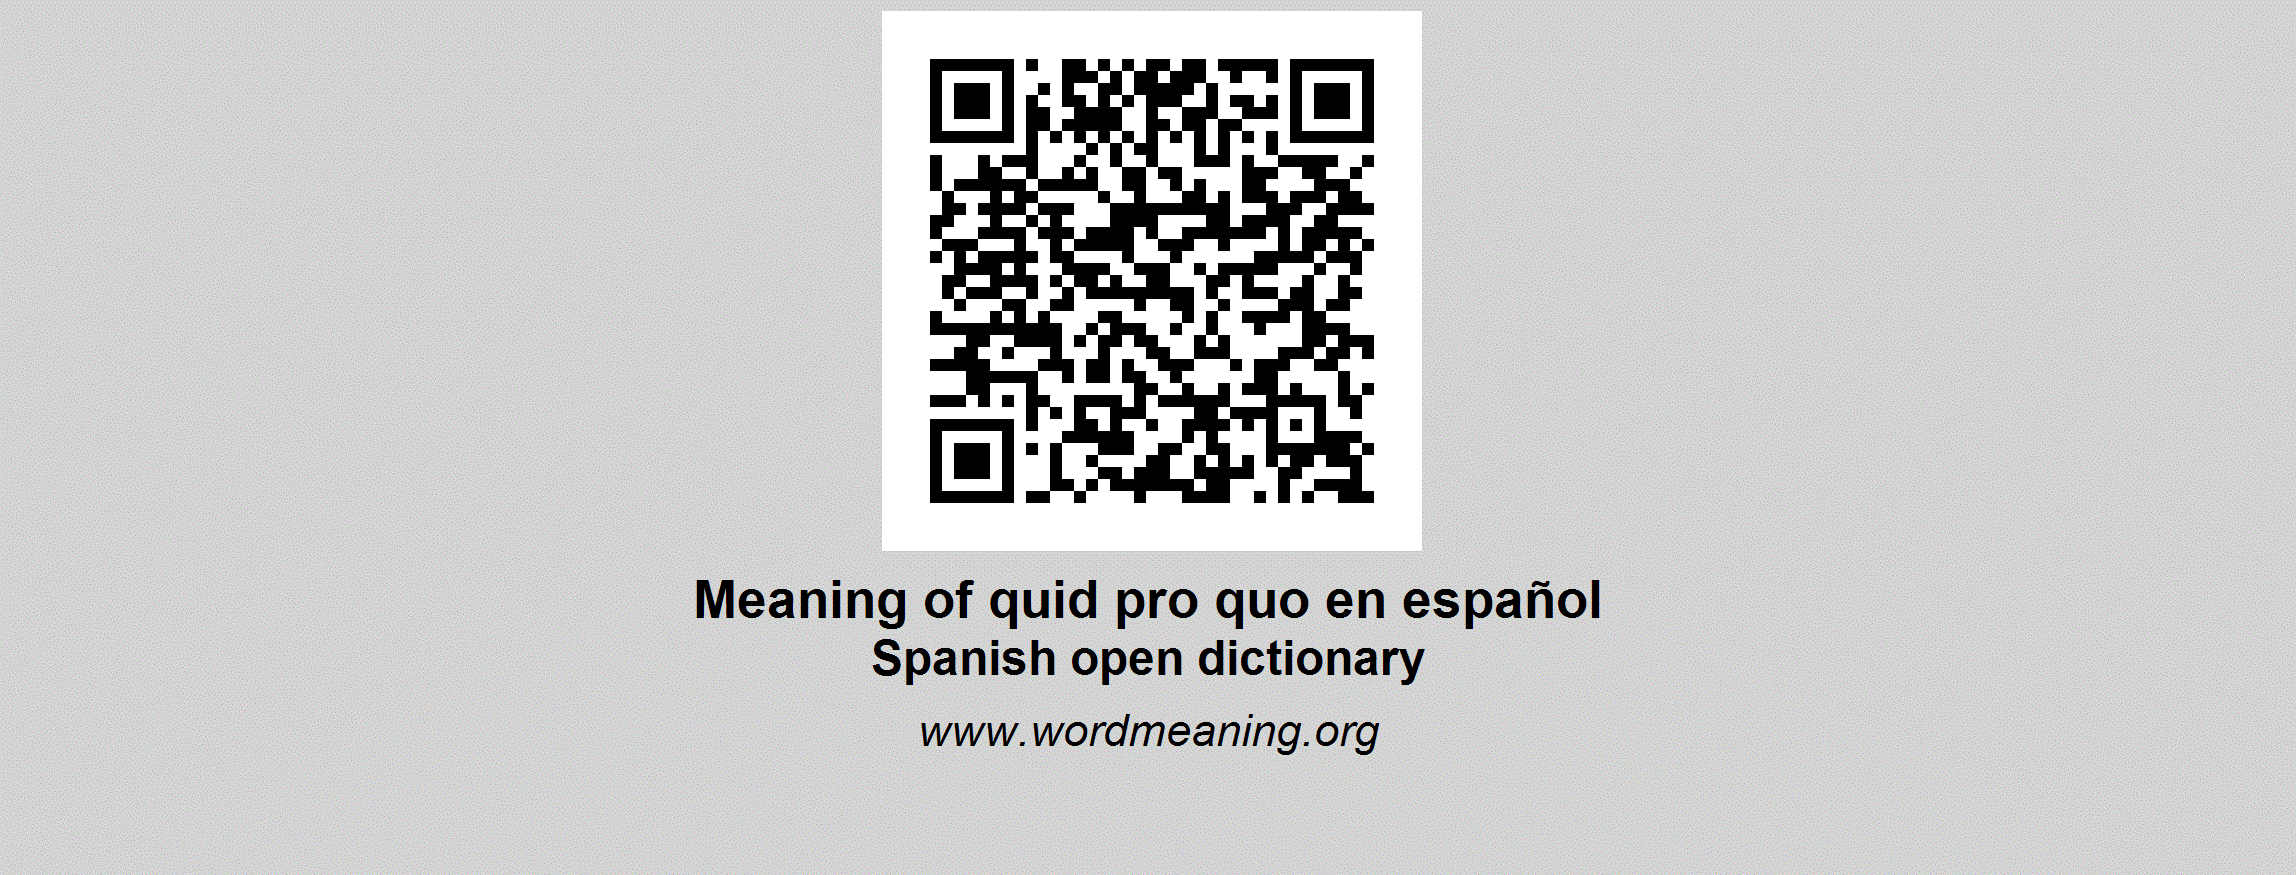 Quid pro quo in spanish